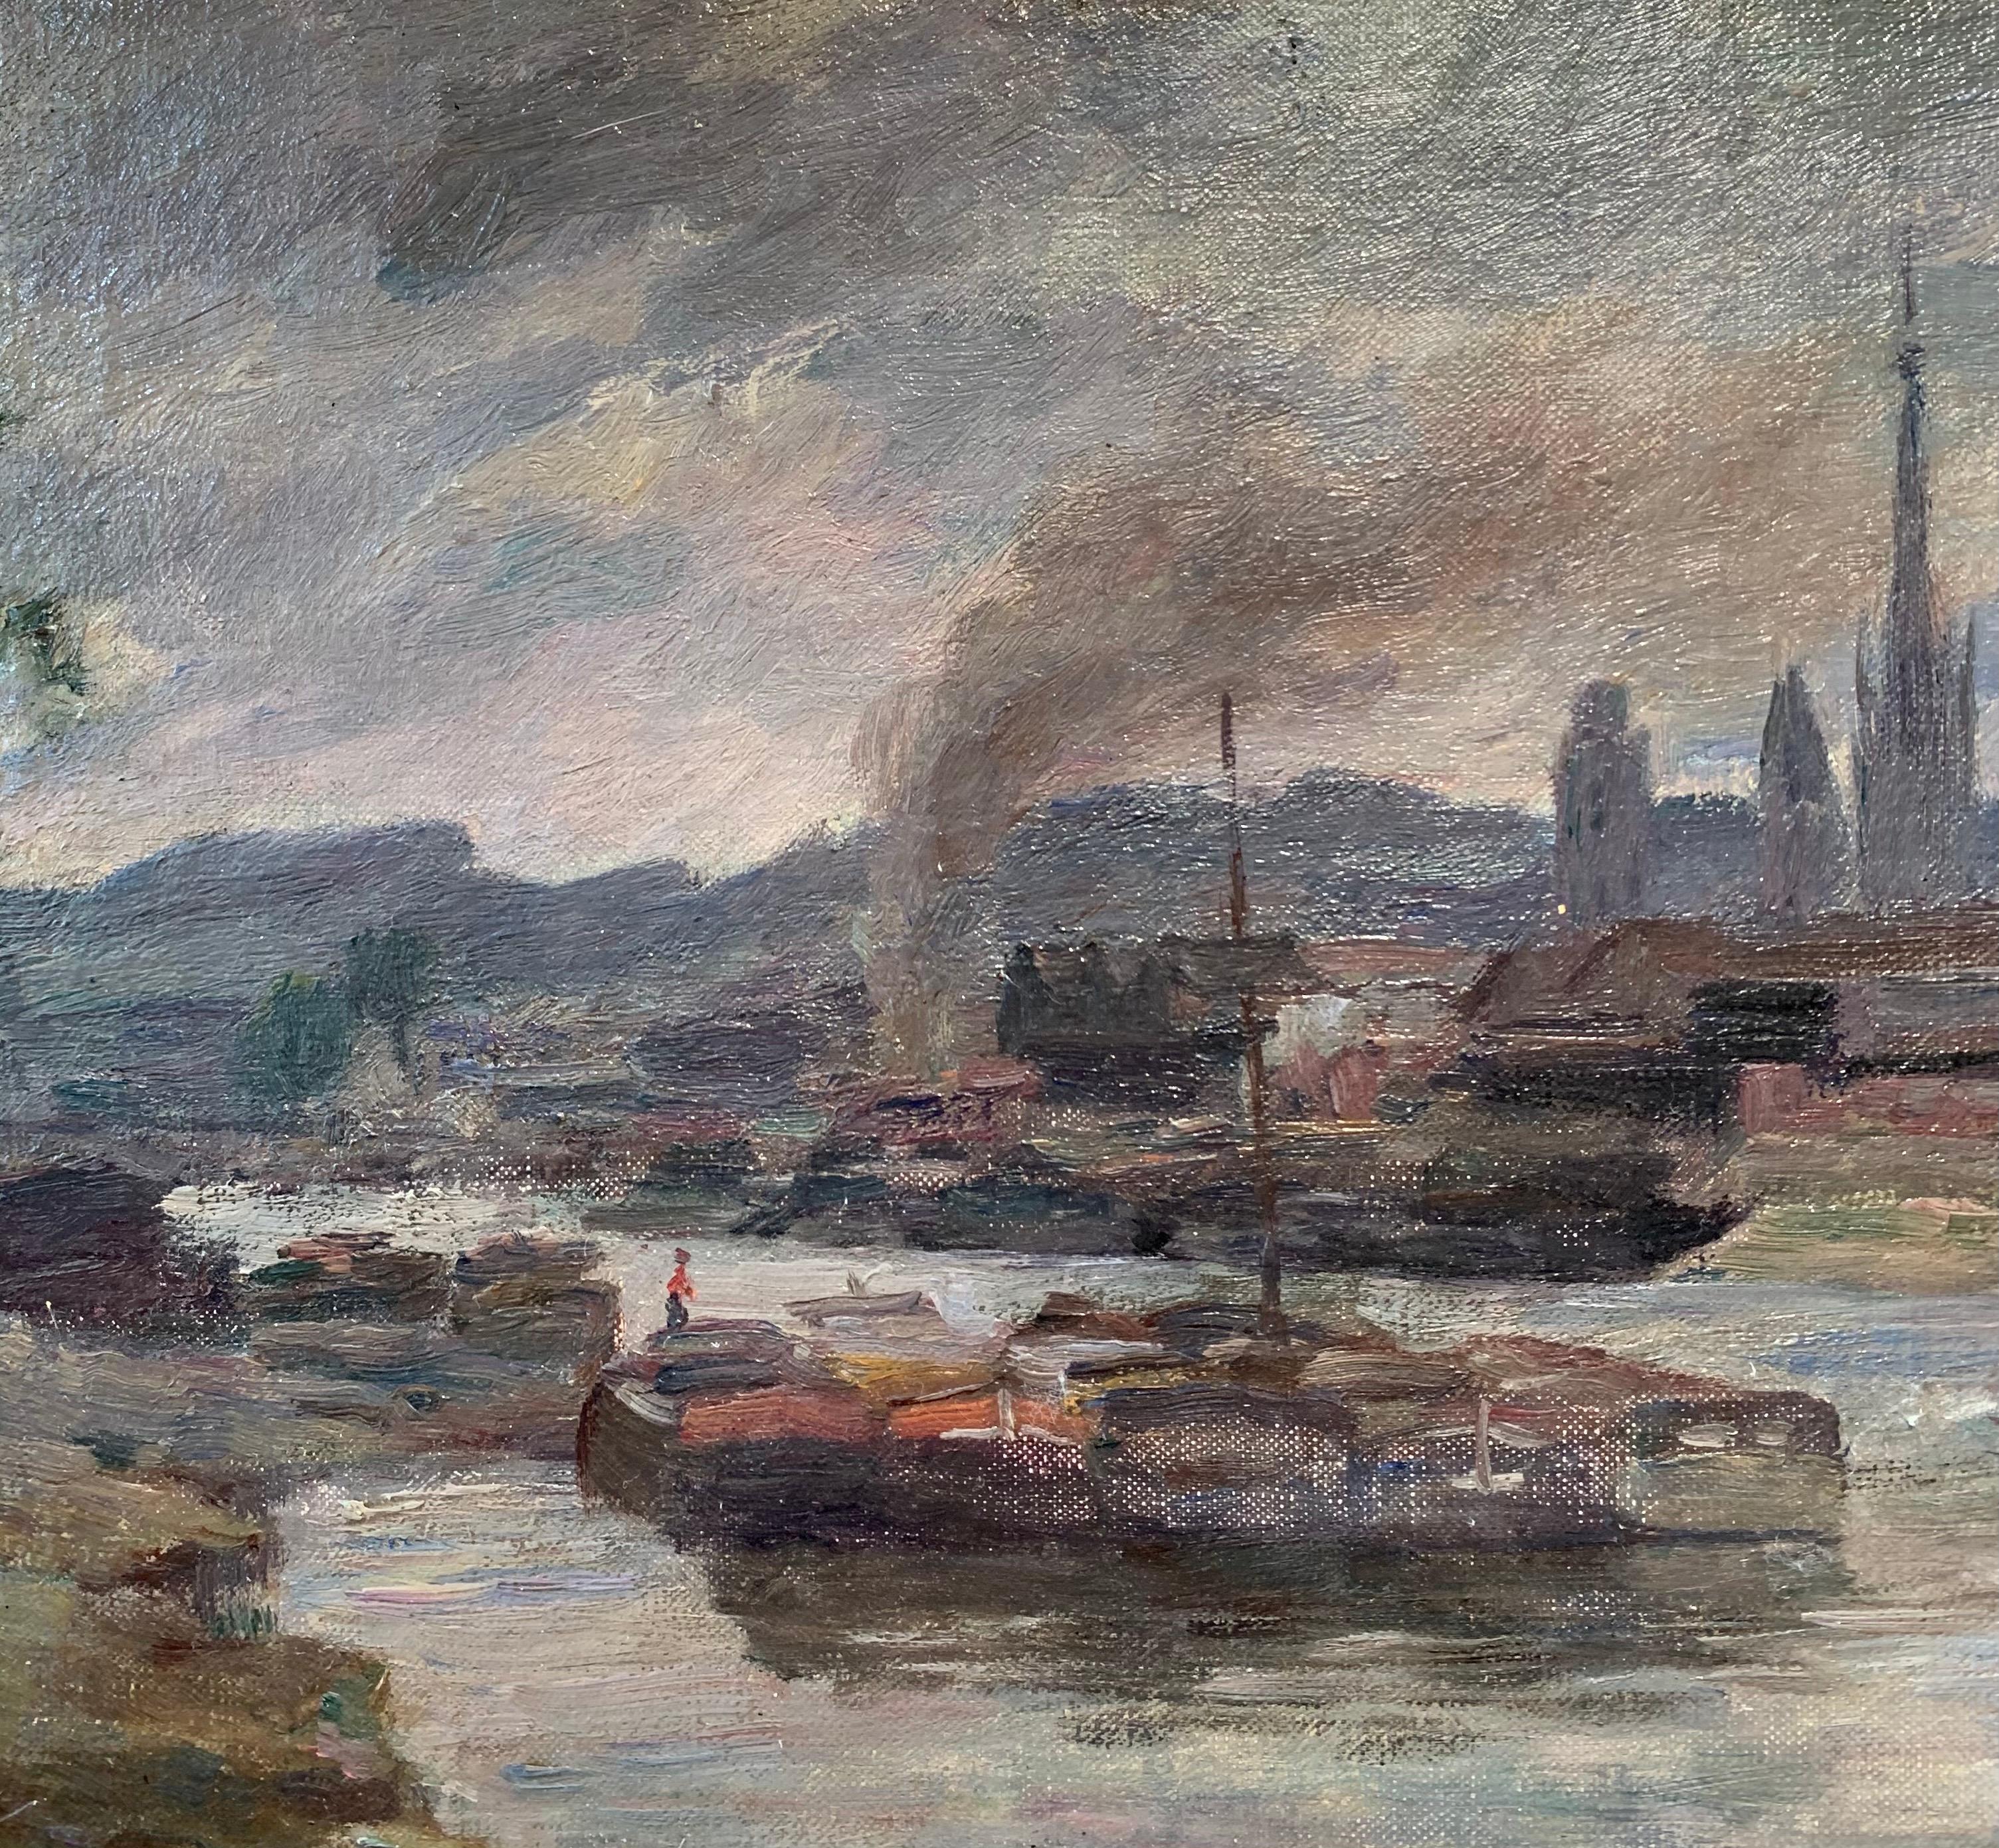  Vue de Rouen , France, impressionniste du 19e sicle, huile sur carton, 1898 
